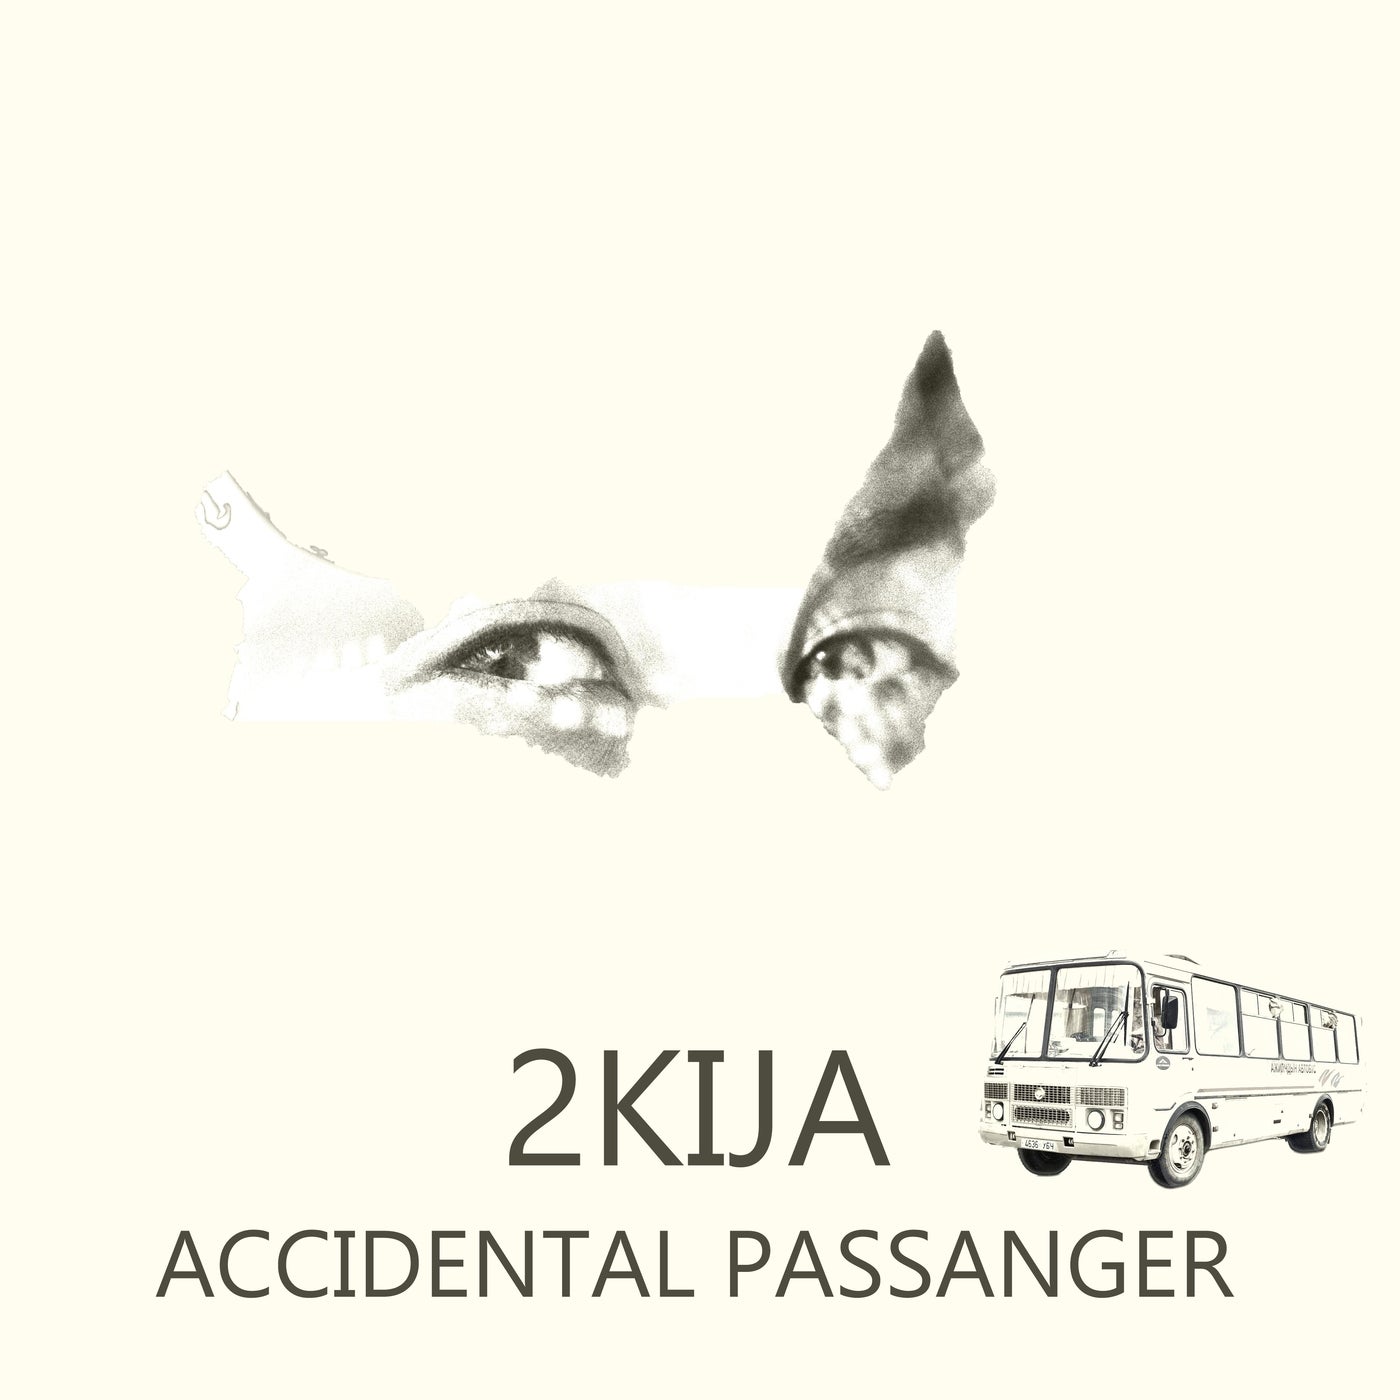 Accidental Passenger